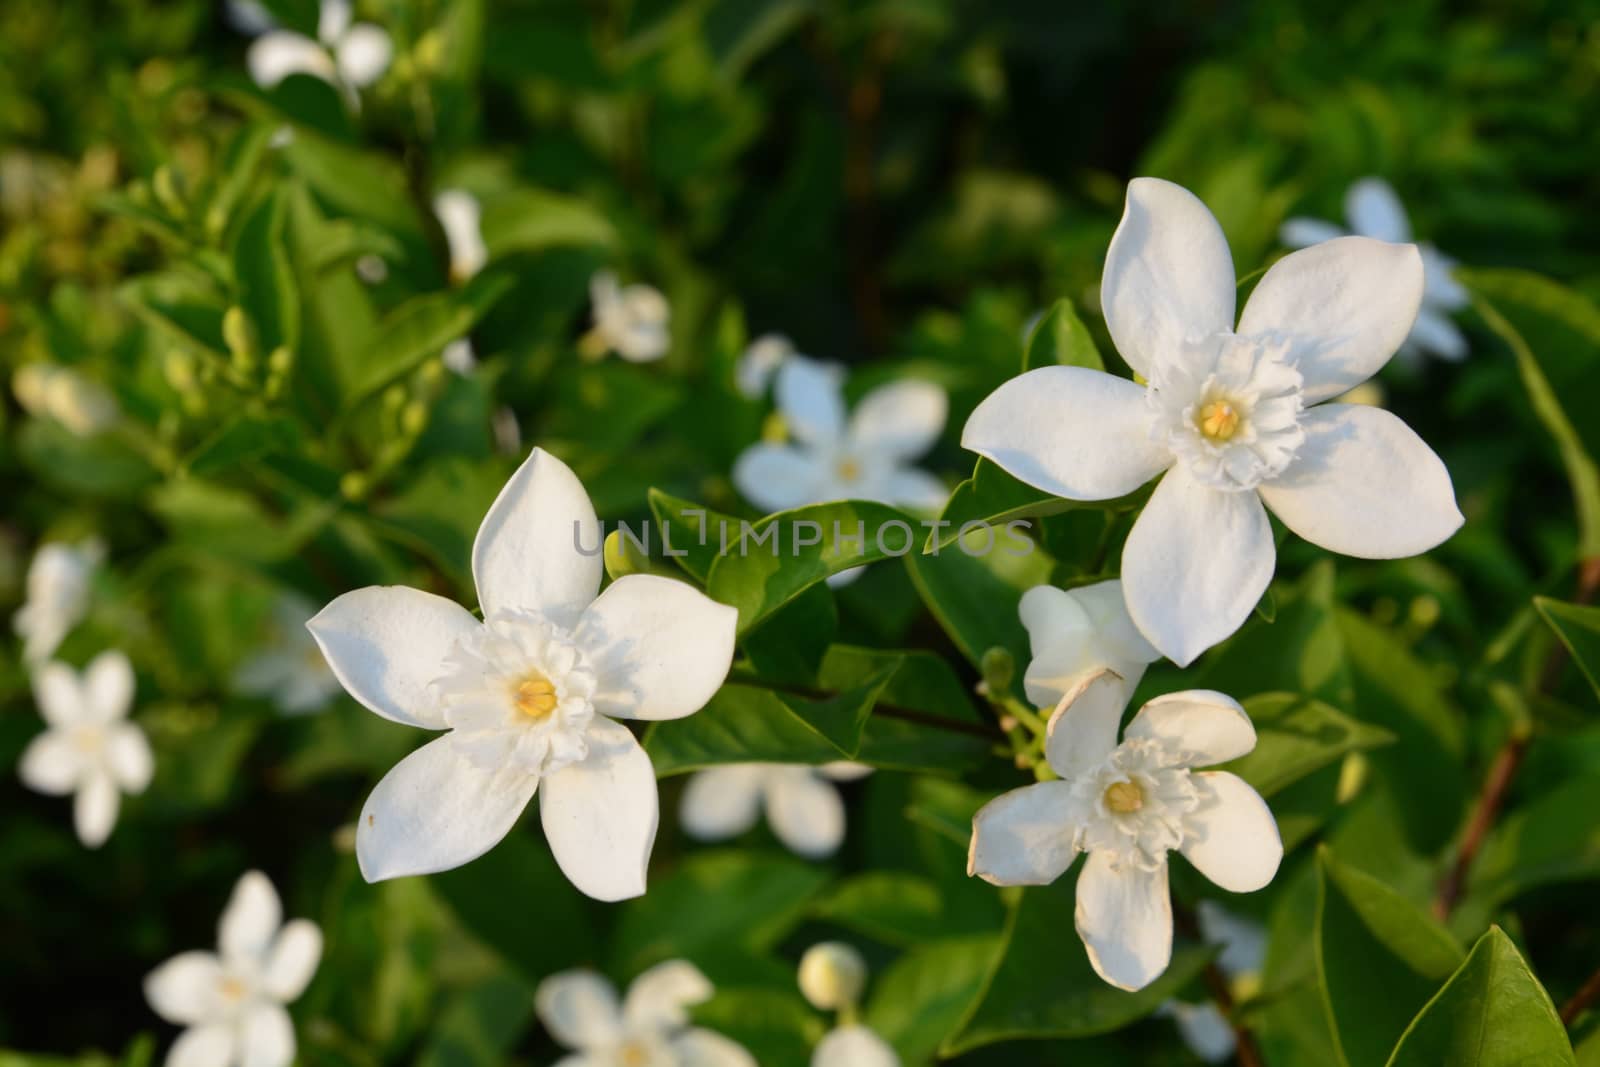 Blooming white flower of White Inda flower or Wrightia antidysenterica flower